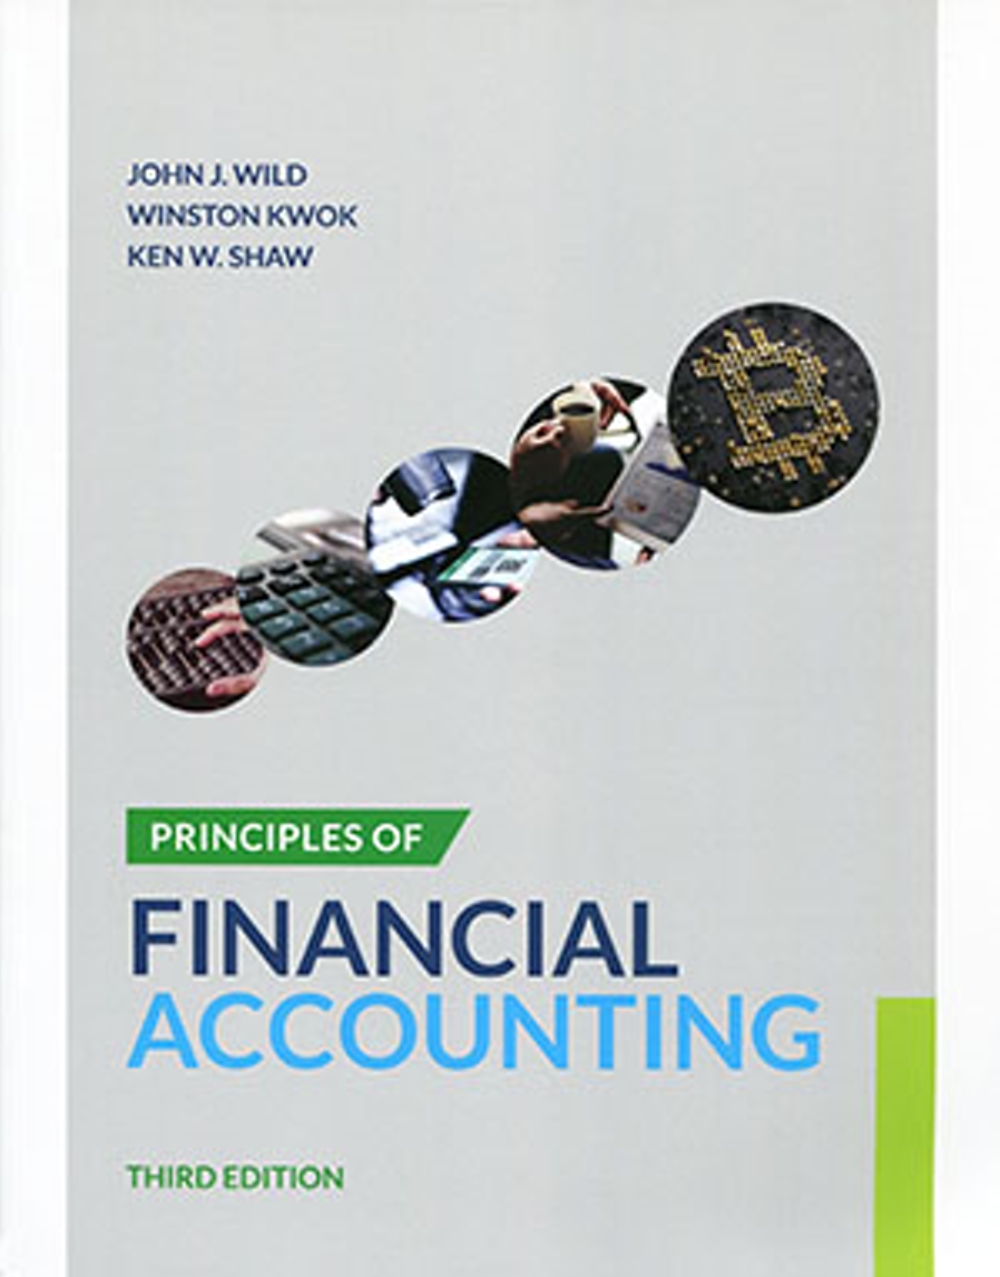 Principles of Financial Accoun...